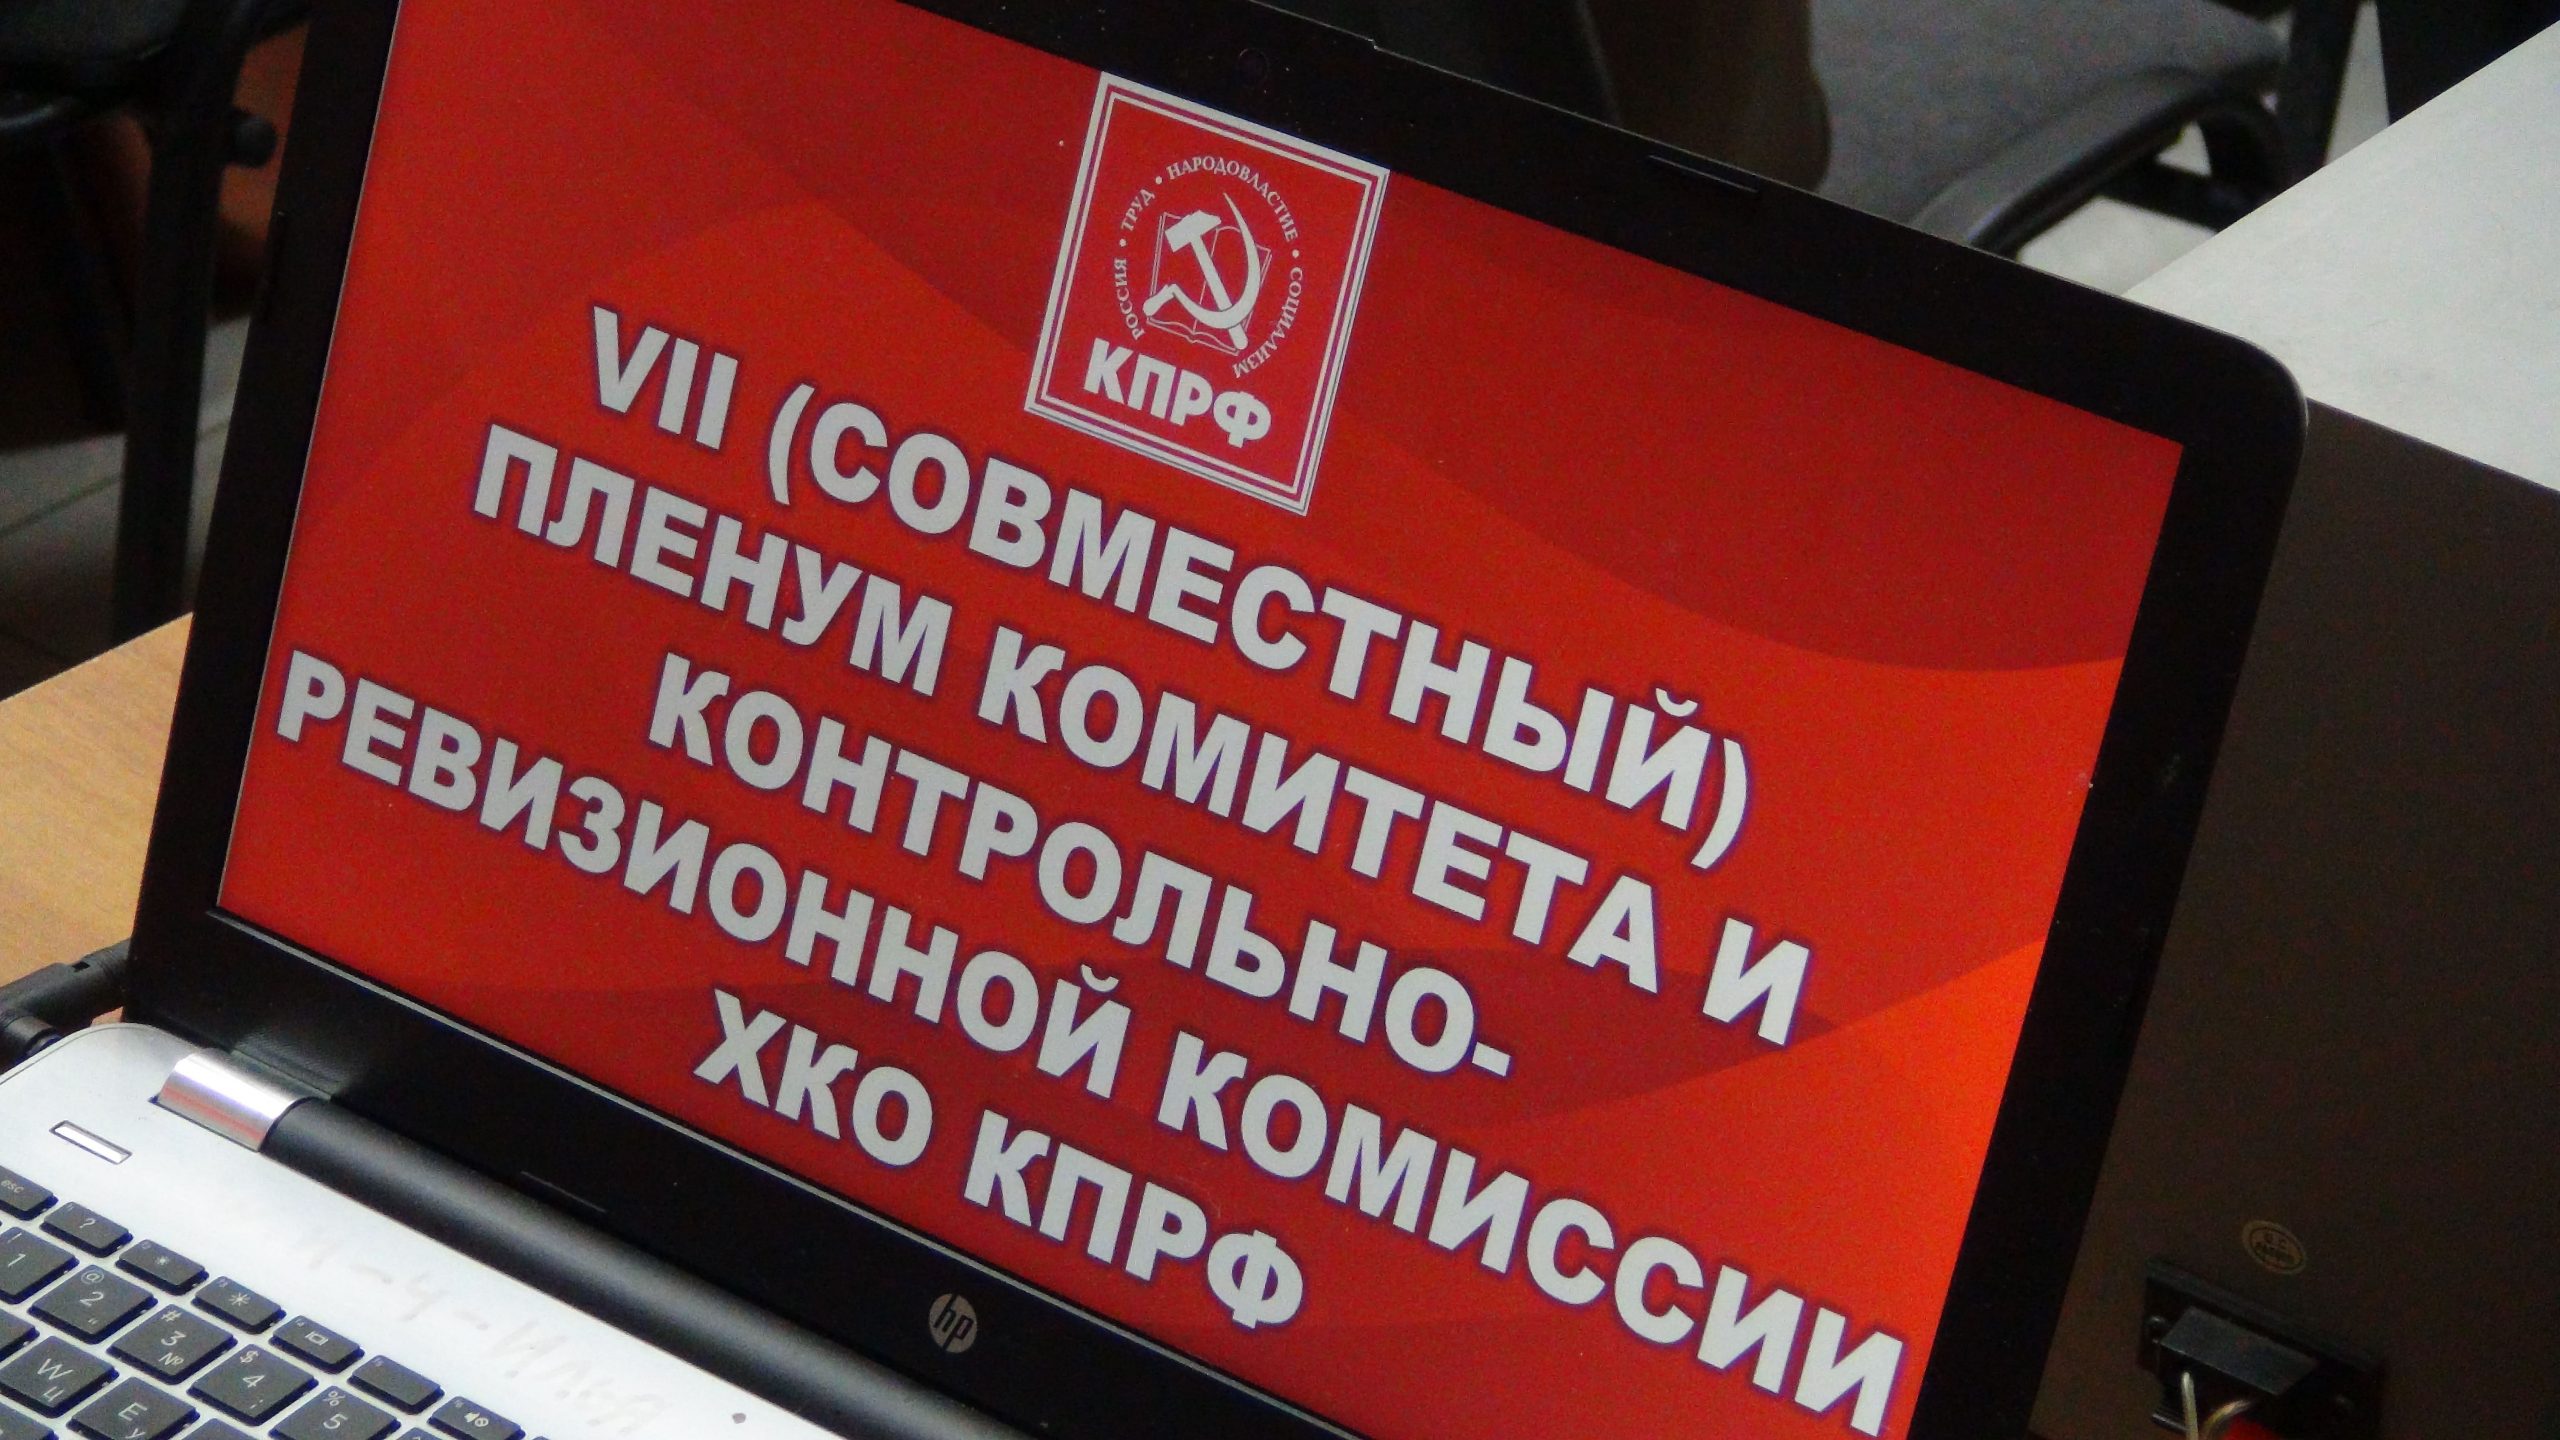 3 июня 2019 хабаровск. КПРФ за свою экономику. Поздравление секретарю КПРФ.